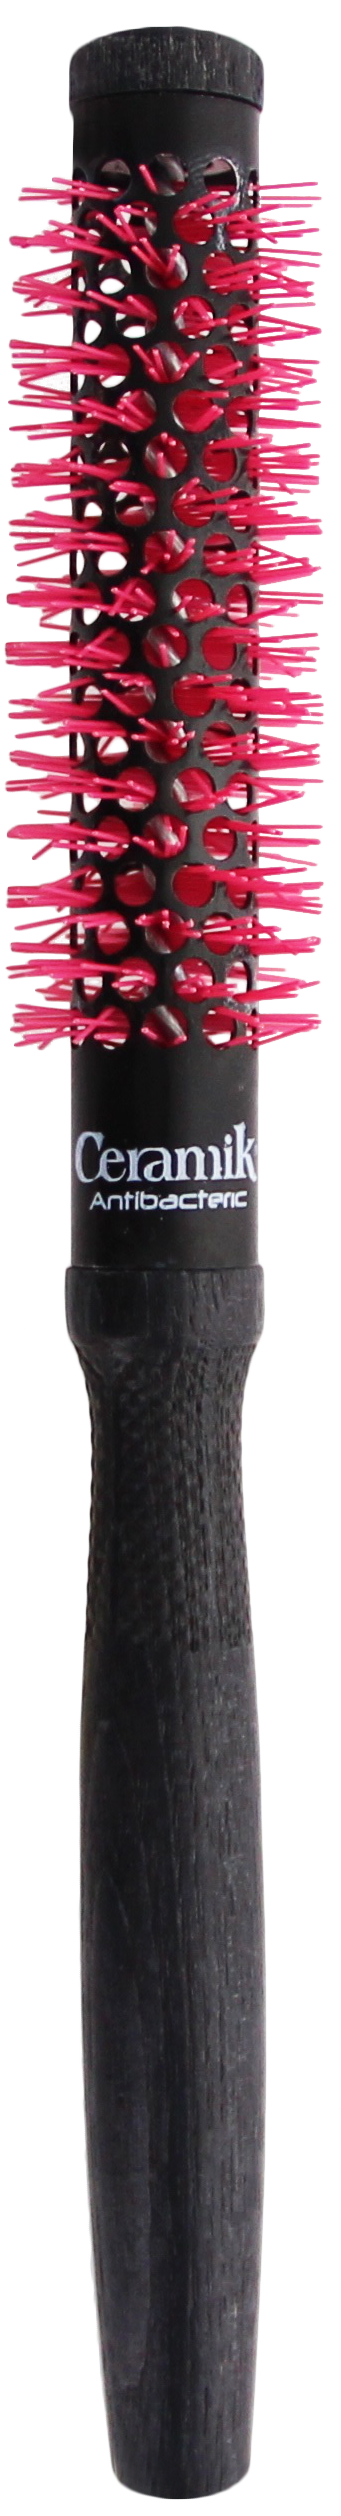 Tek Ceramik Antibateric Oxy Round Brush 18mm